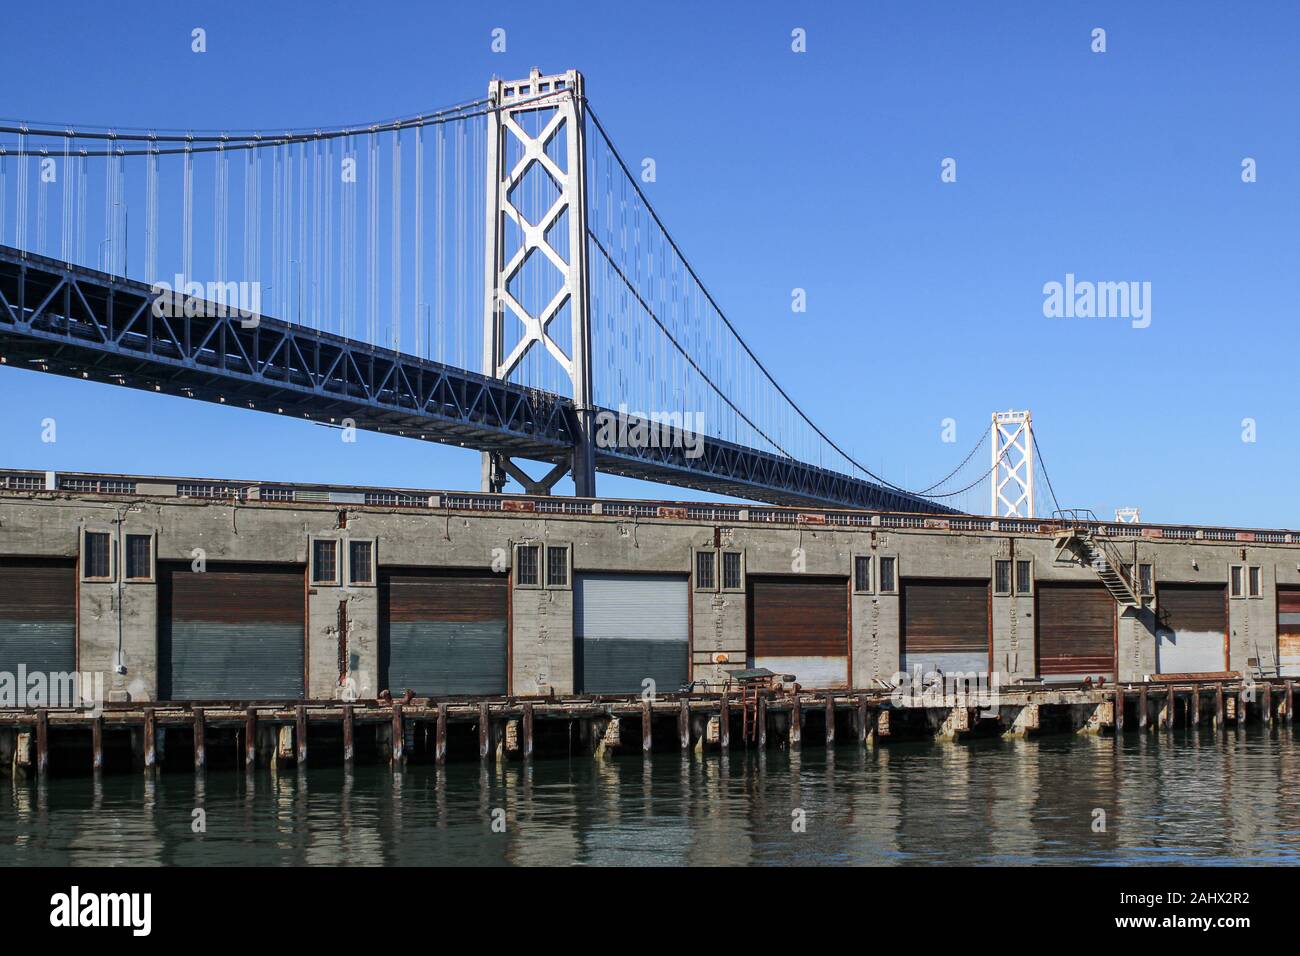 Pier 28 konkrete Lagerhallen und San Francisco-Oakland Bay Bridge in South Beach District von San Francisco, Vereinigte Staaten von Amerika Stockfoto